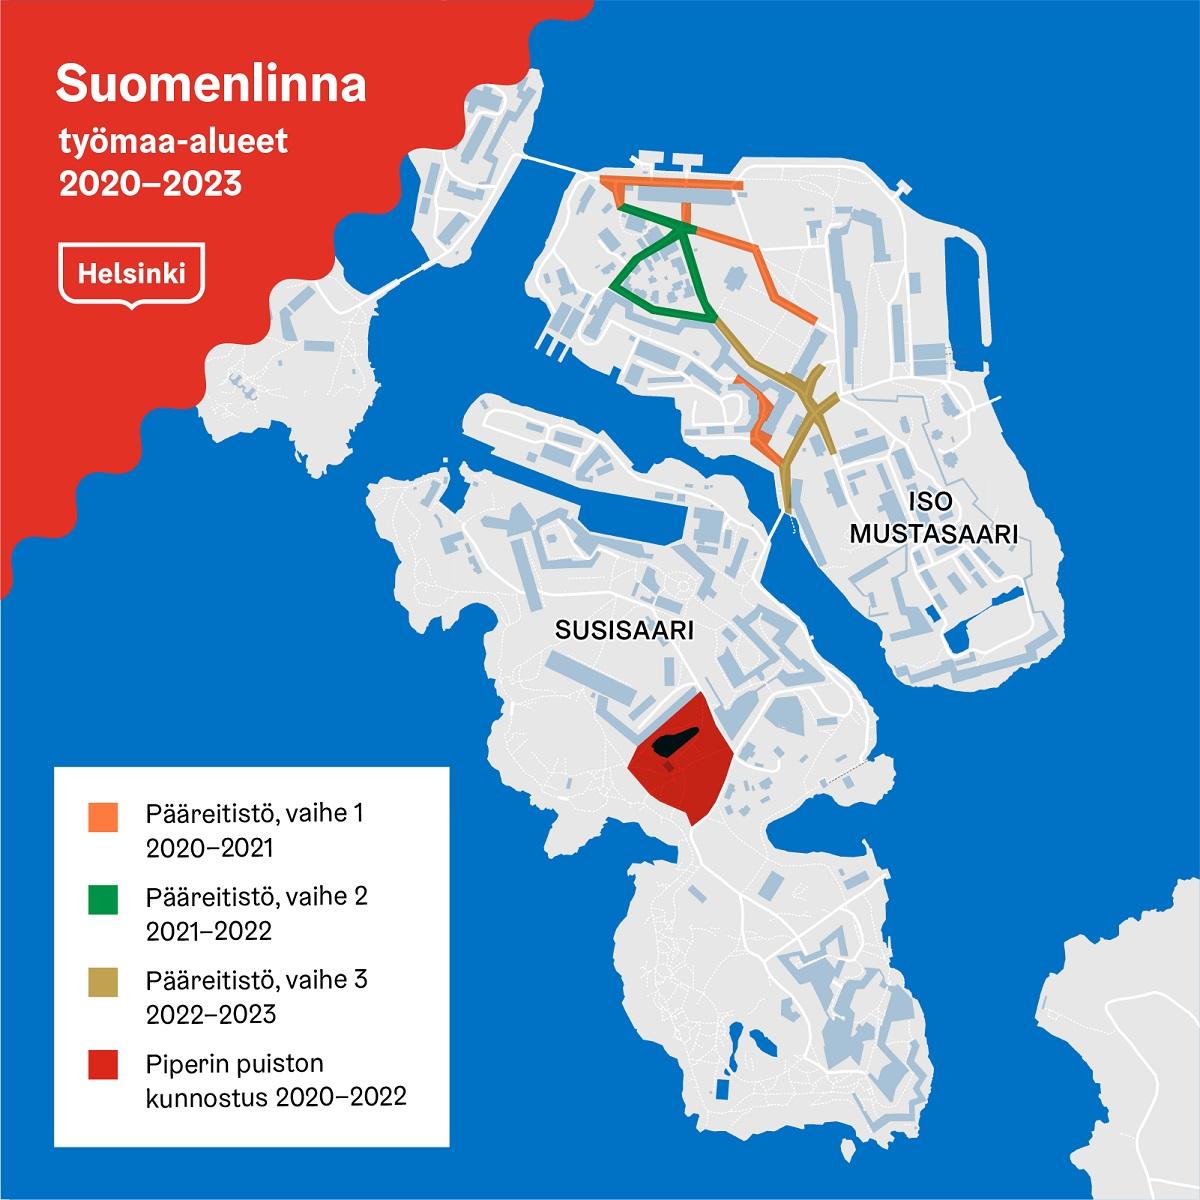 Suomenlinnan urakka-alueen kartta vuosille 2020-2023